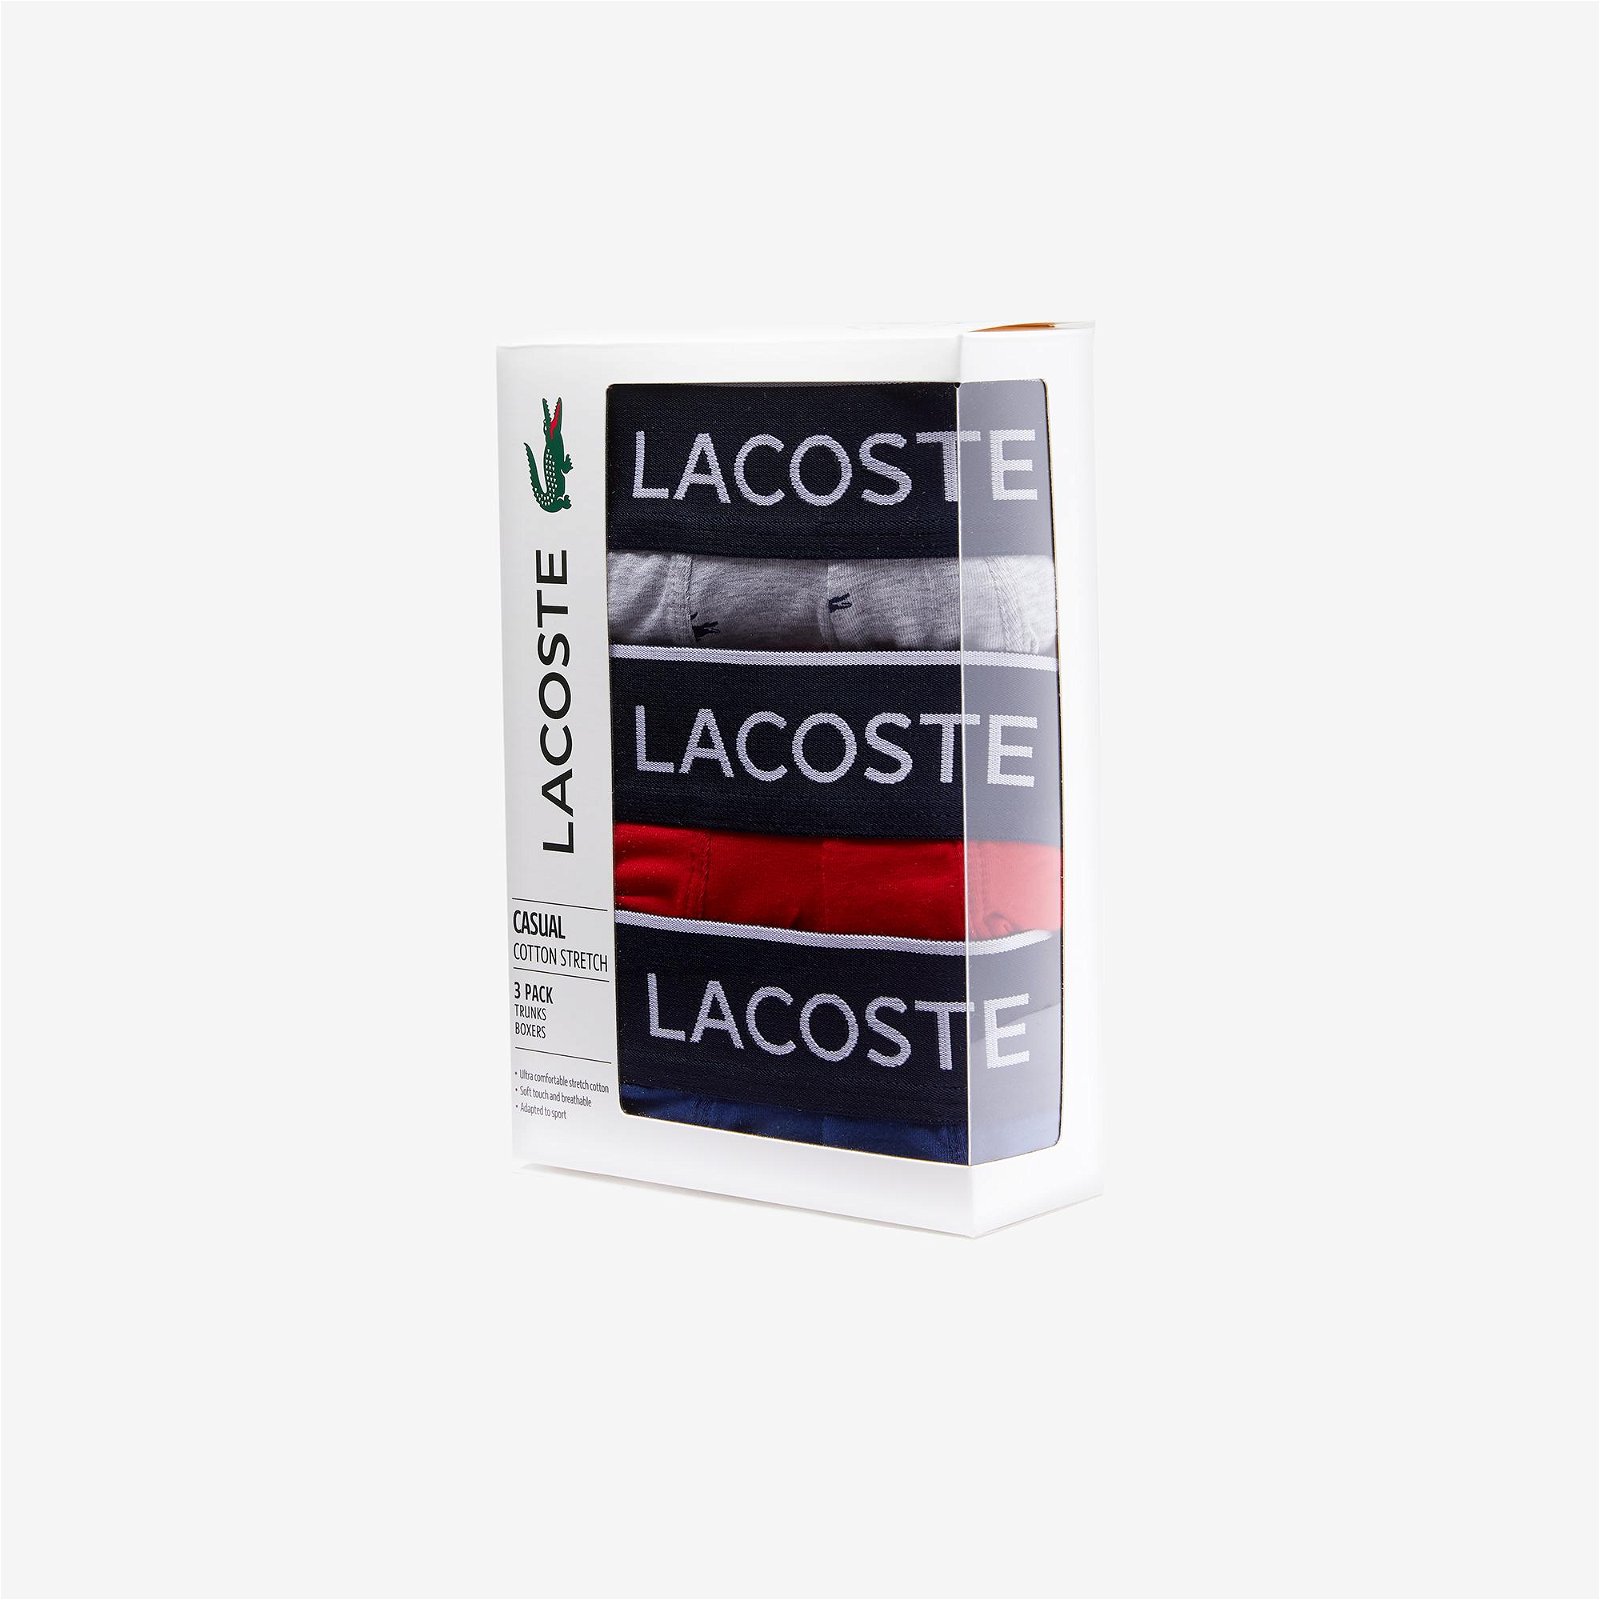 Lacoste balení 3 volných trenýrek s podpisem Lacoste